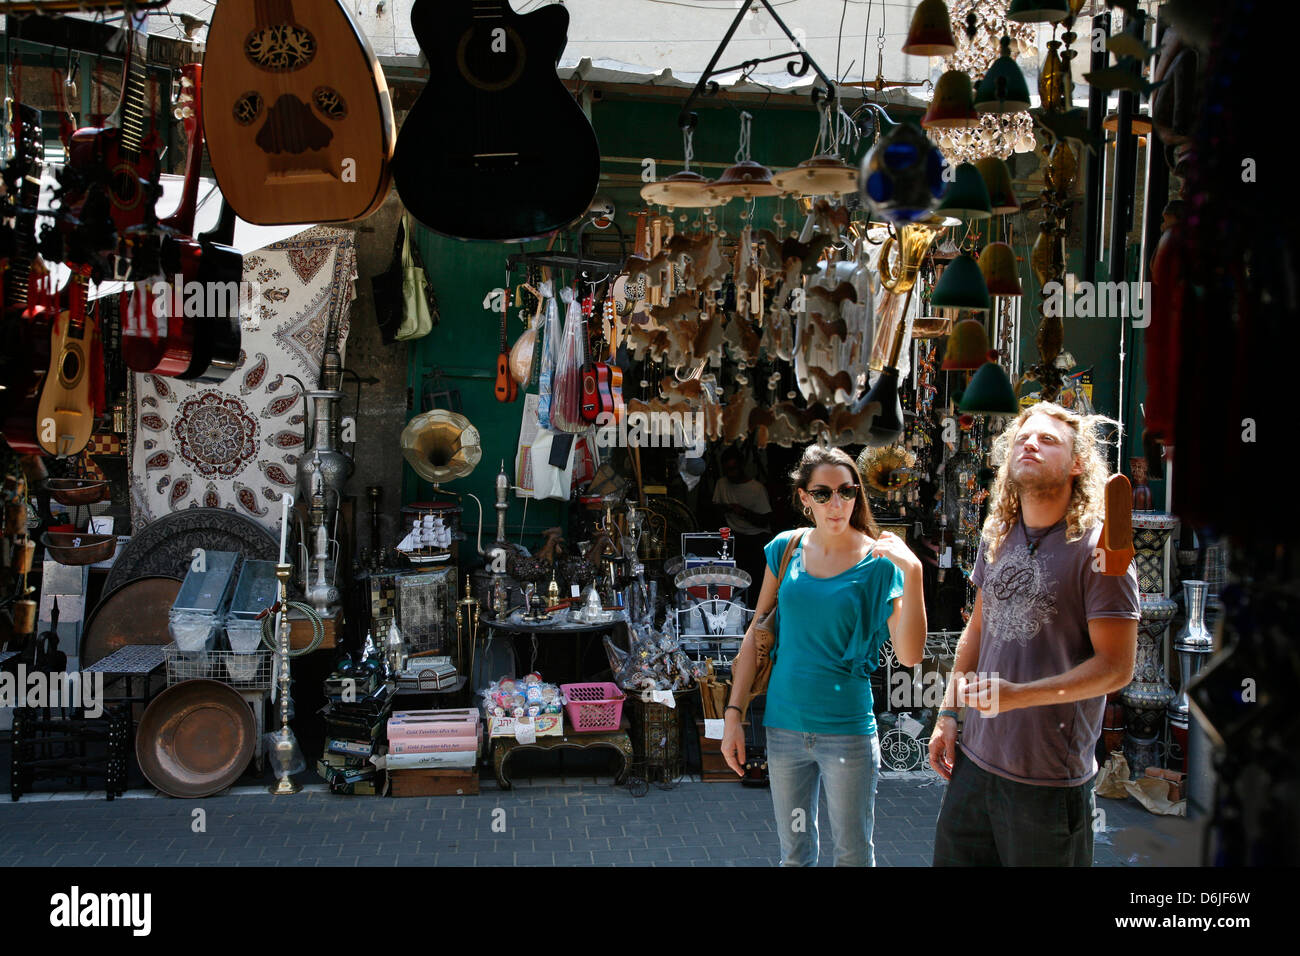 Le marché aux puces de Jaffa, Tel Aviv, Israël, Moyen Orient Banque D'Images